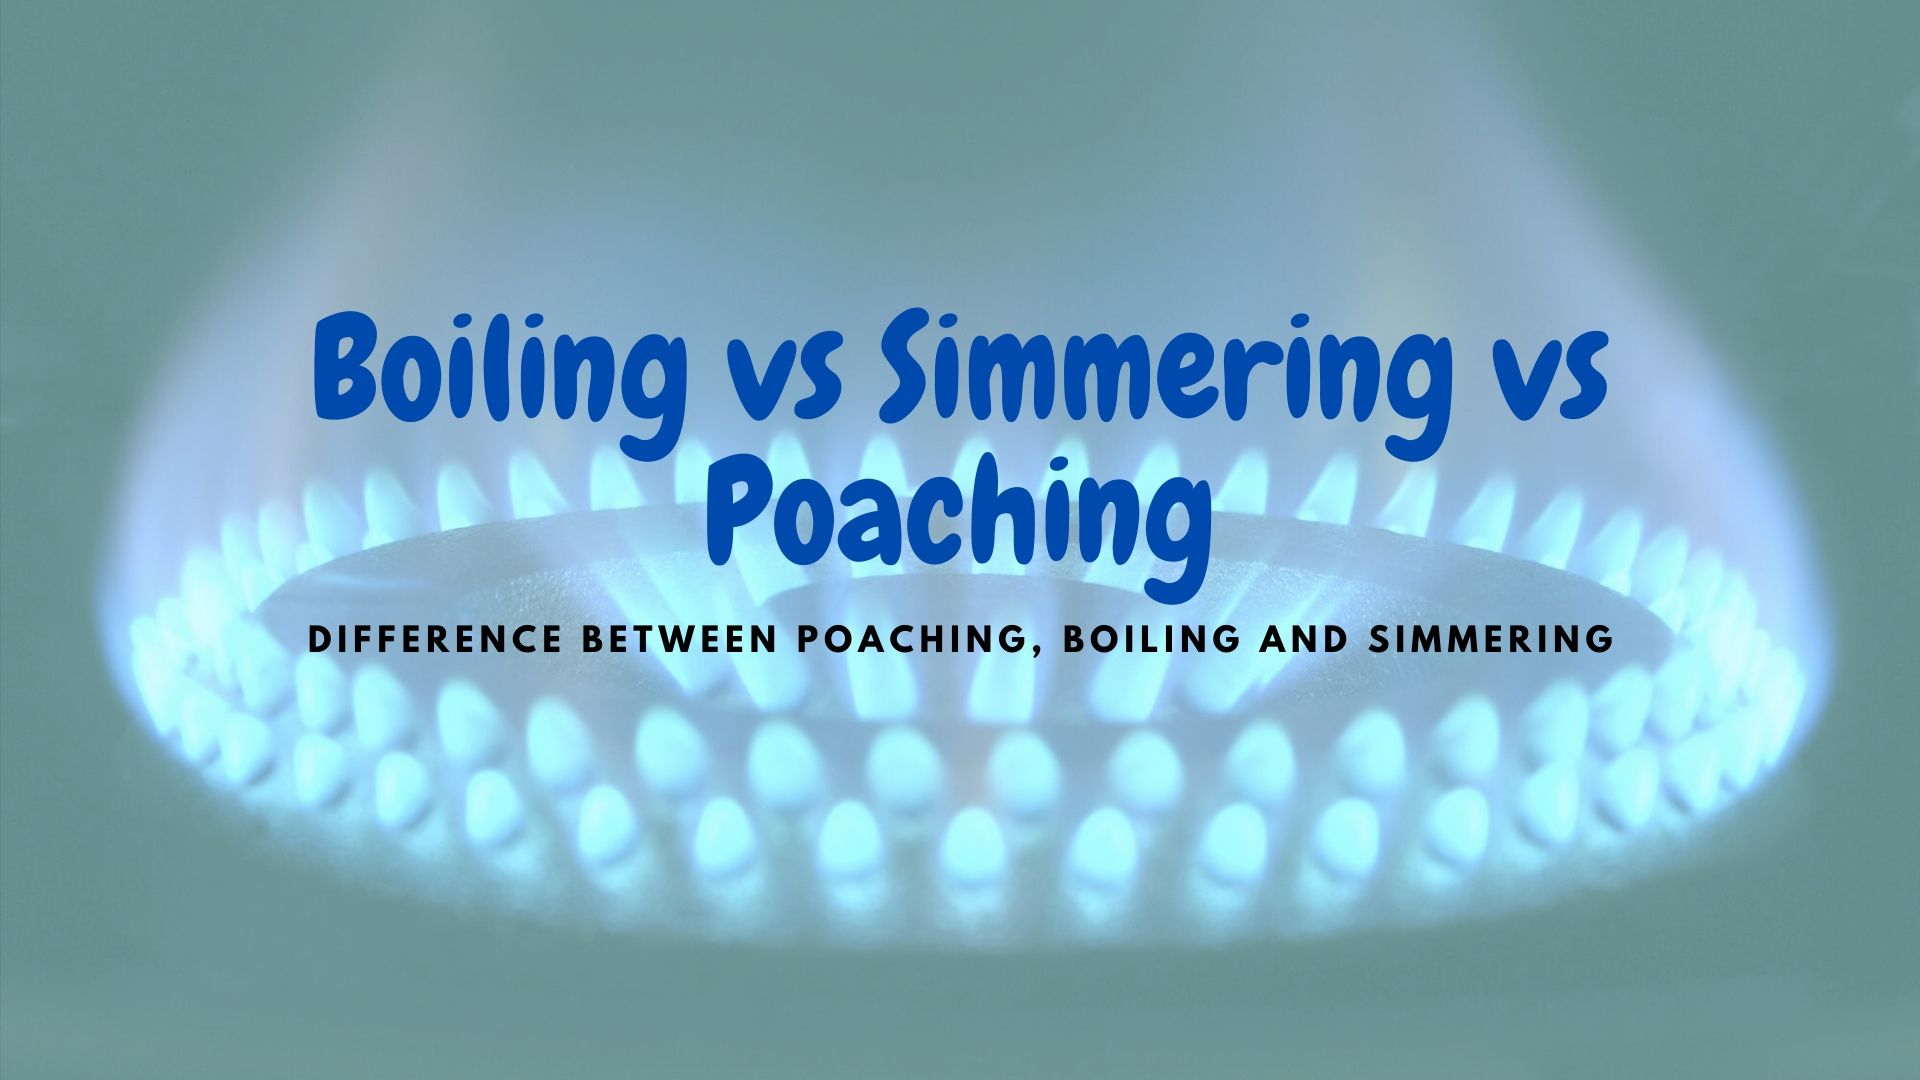 Boiling vs Simmering vs Poaching